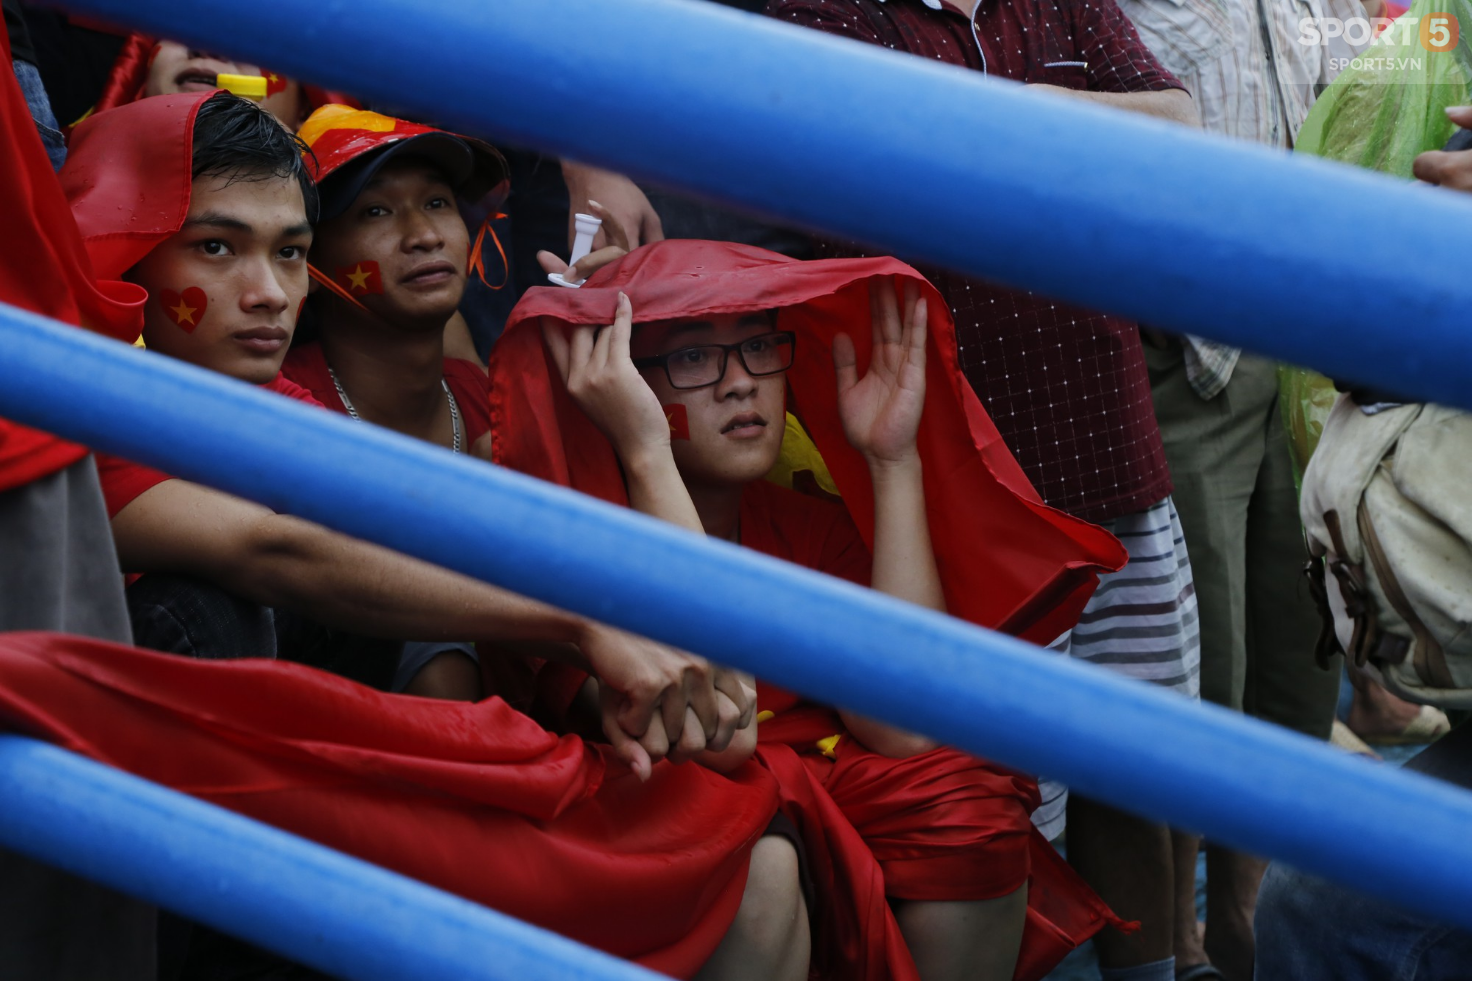 Ấm lòng hình ảnh người hâm mộ Việt Nam đội mưa tới giây cuối cùng dù đội nhà thất bại - Ảnh 6.